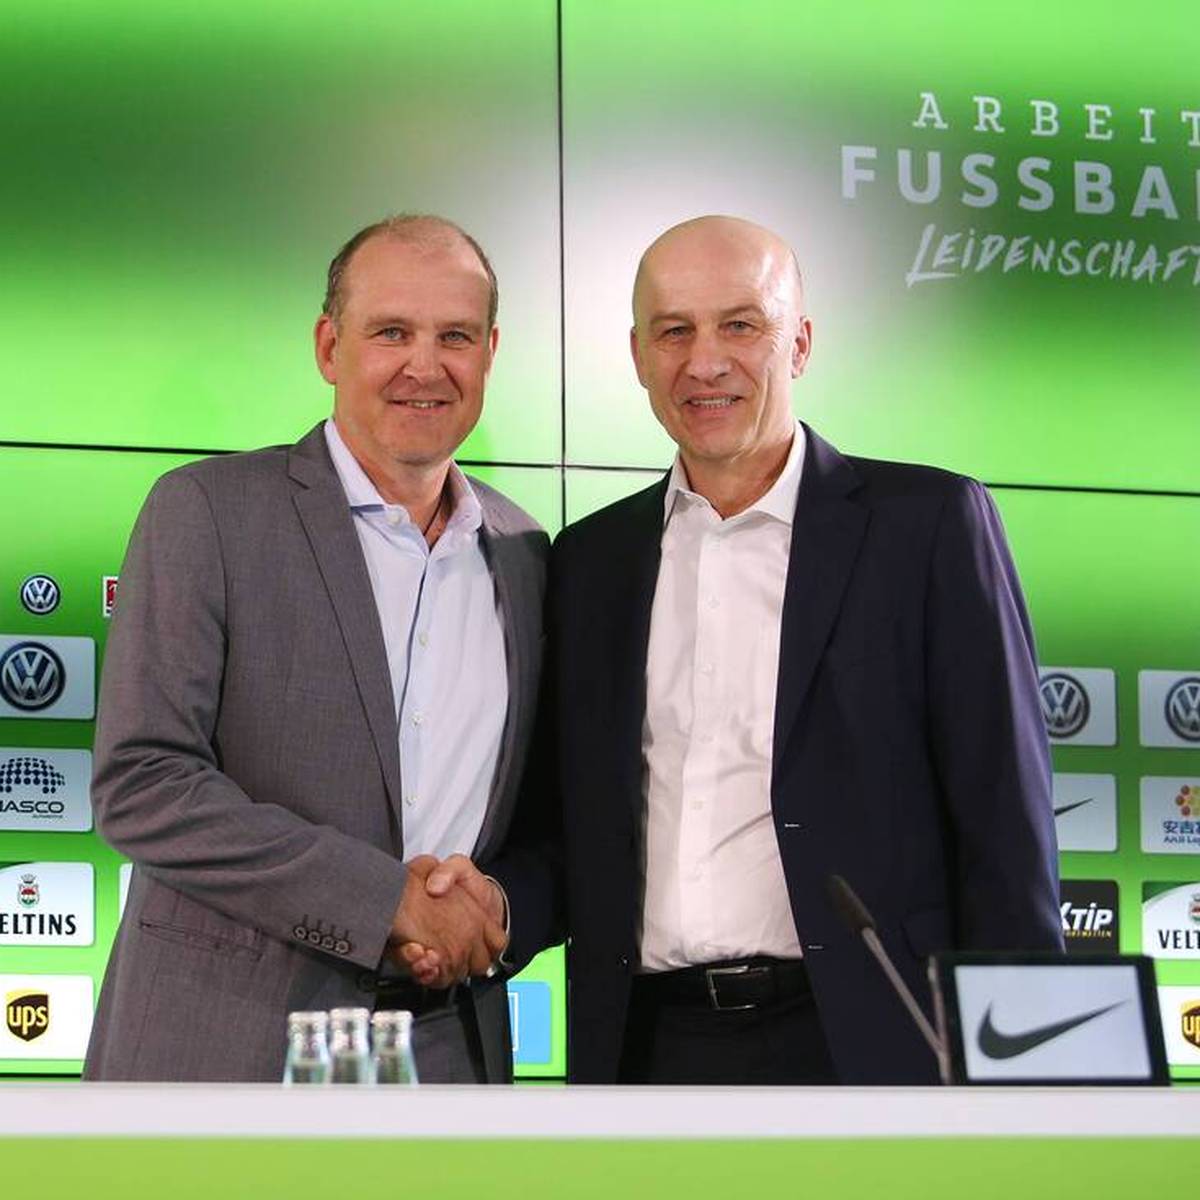 Aufsichtsrats-Chef Frank Witter vom VfL Wolfsburg stärkt Sportchef Jörg Schmadtke nach dem Rauswurf von Florian Kohfeldt den Rücken.